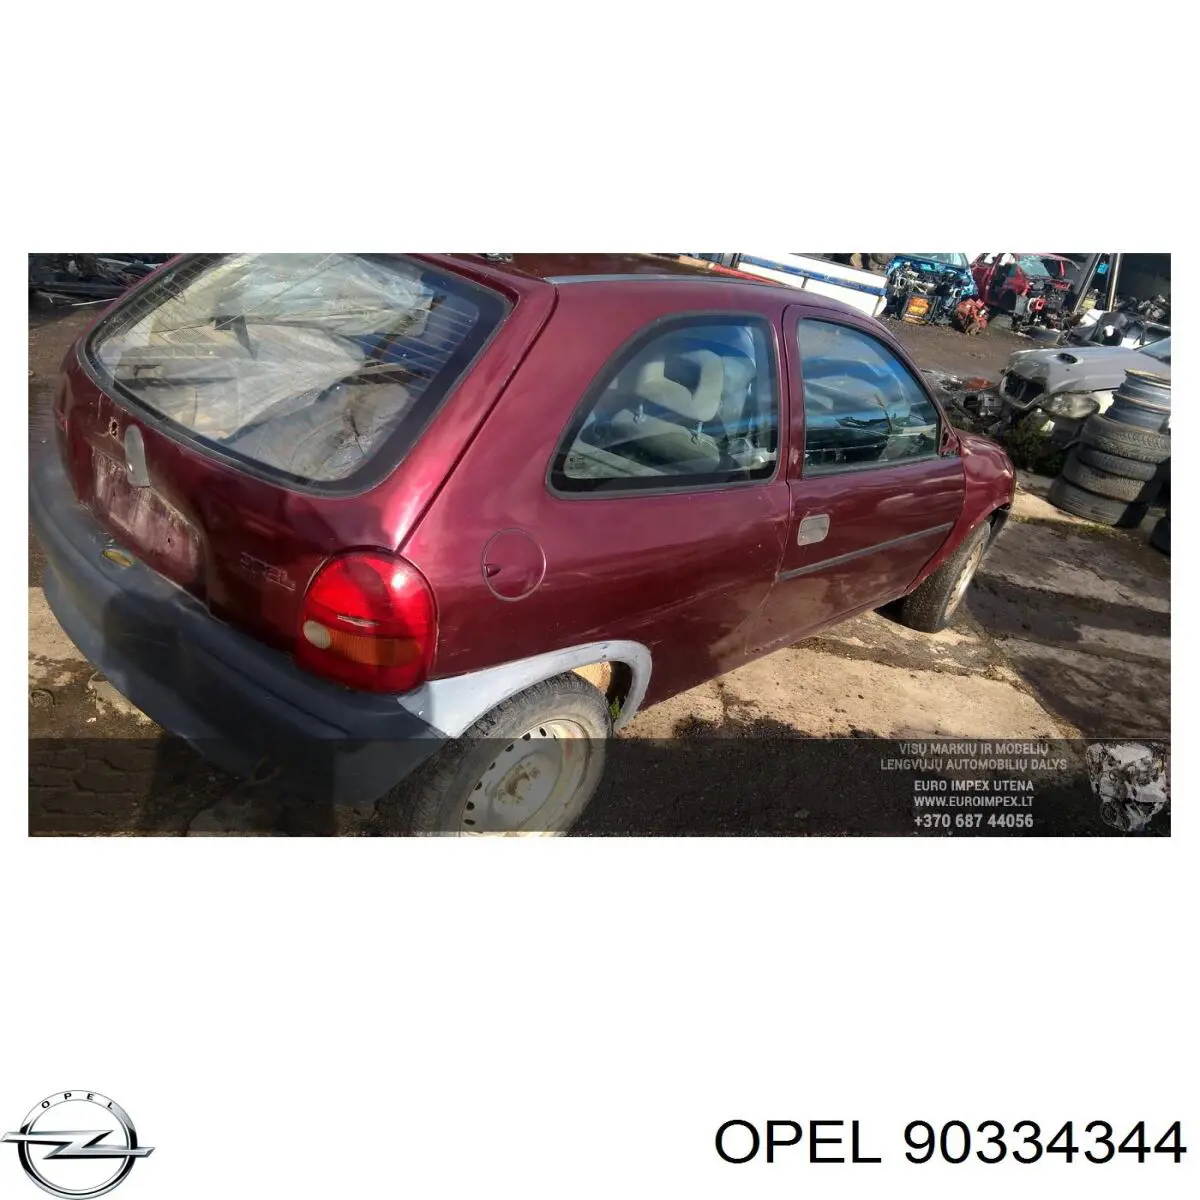 90334344 Opel caja de cambios mecánica, completa